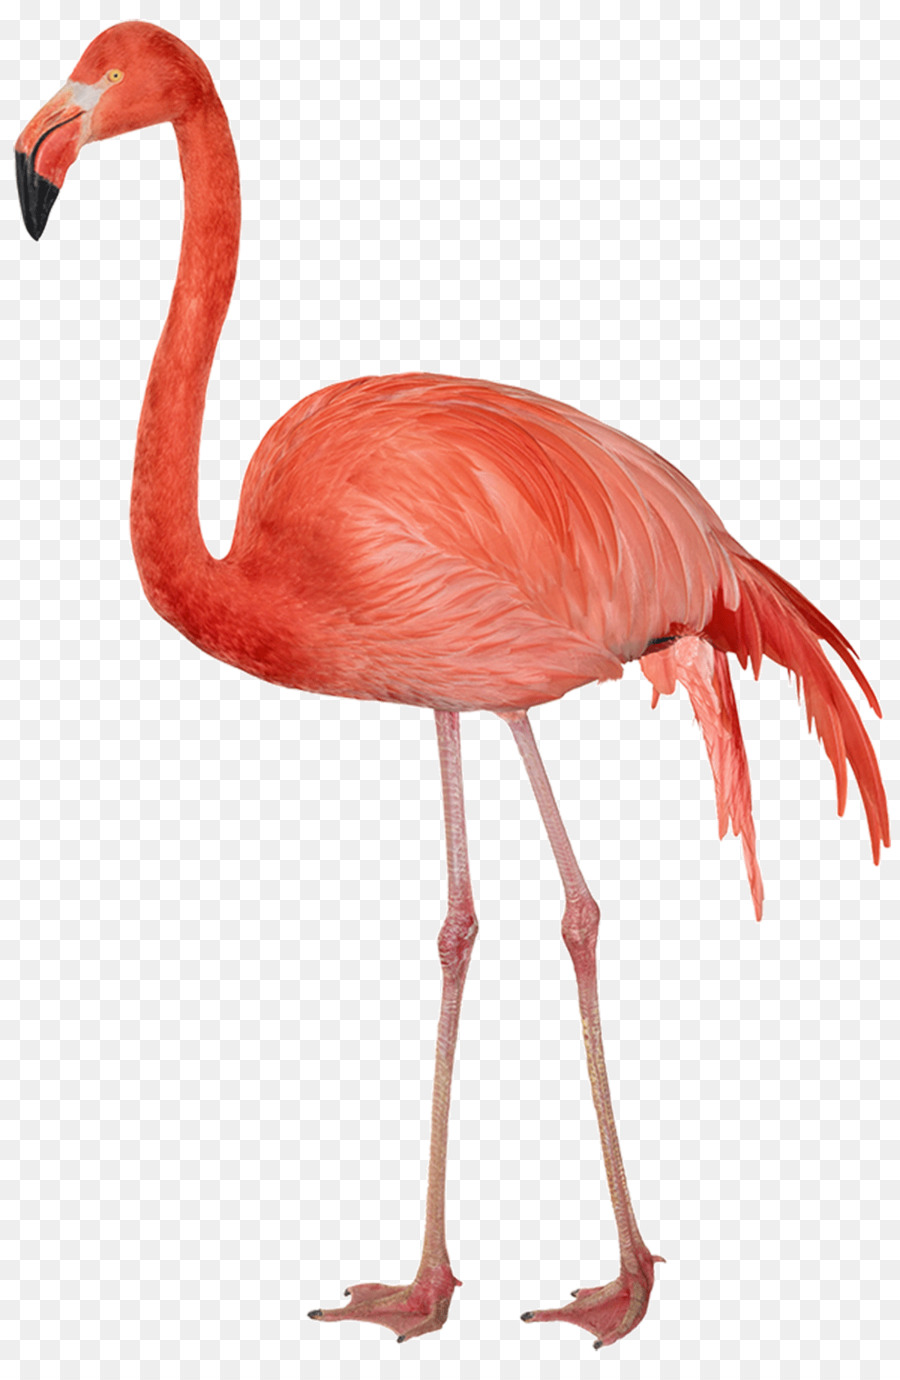 Flamingo Clip art - flamingo[ png download - 1100*1663 - Free Transparent Flamingo png Download.